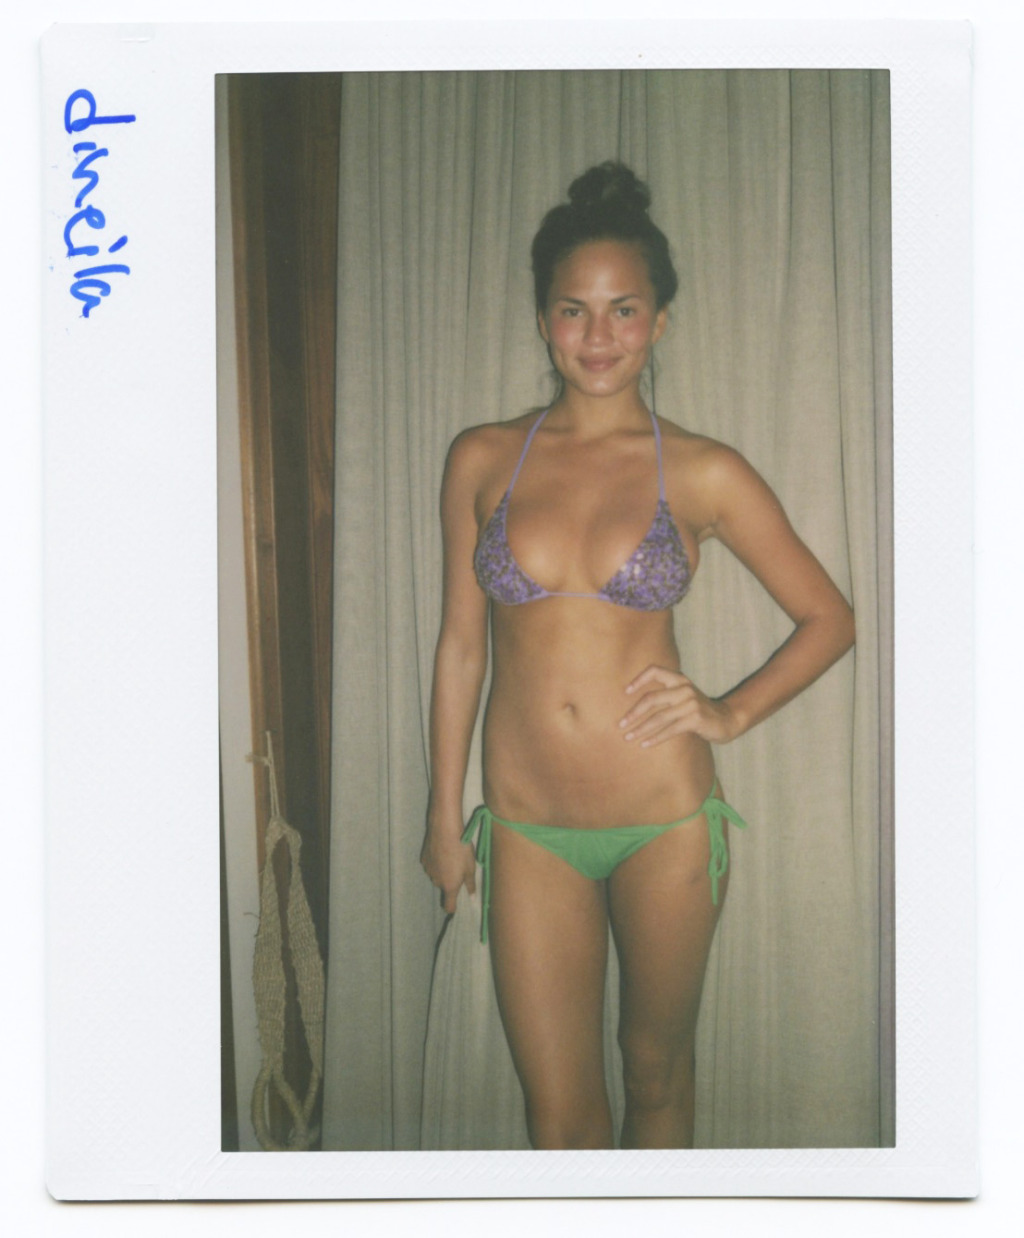 Chrissy_Teigen_--_Polaroids_SI_Swimsuit_003.jpg